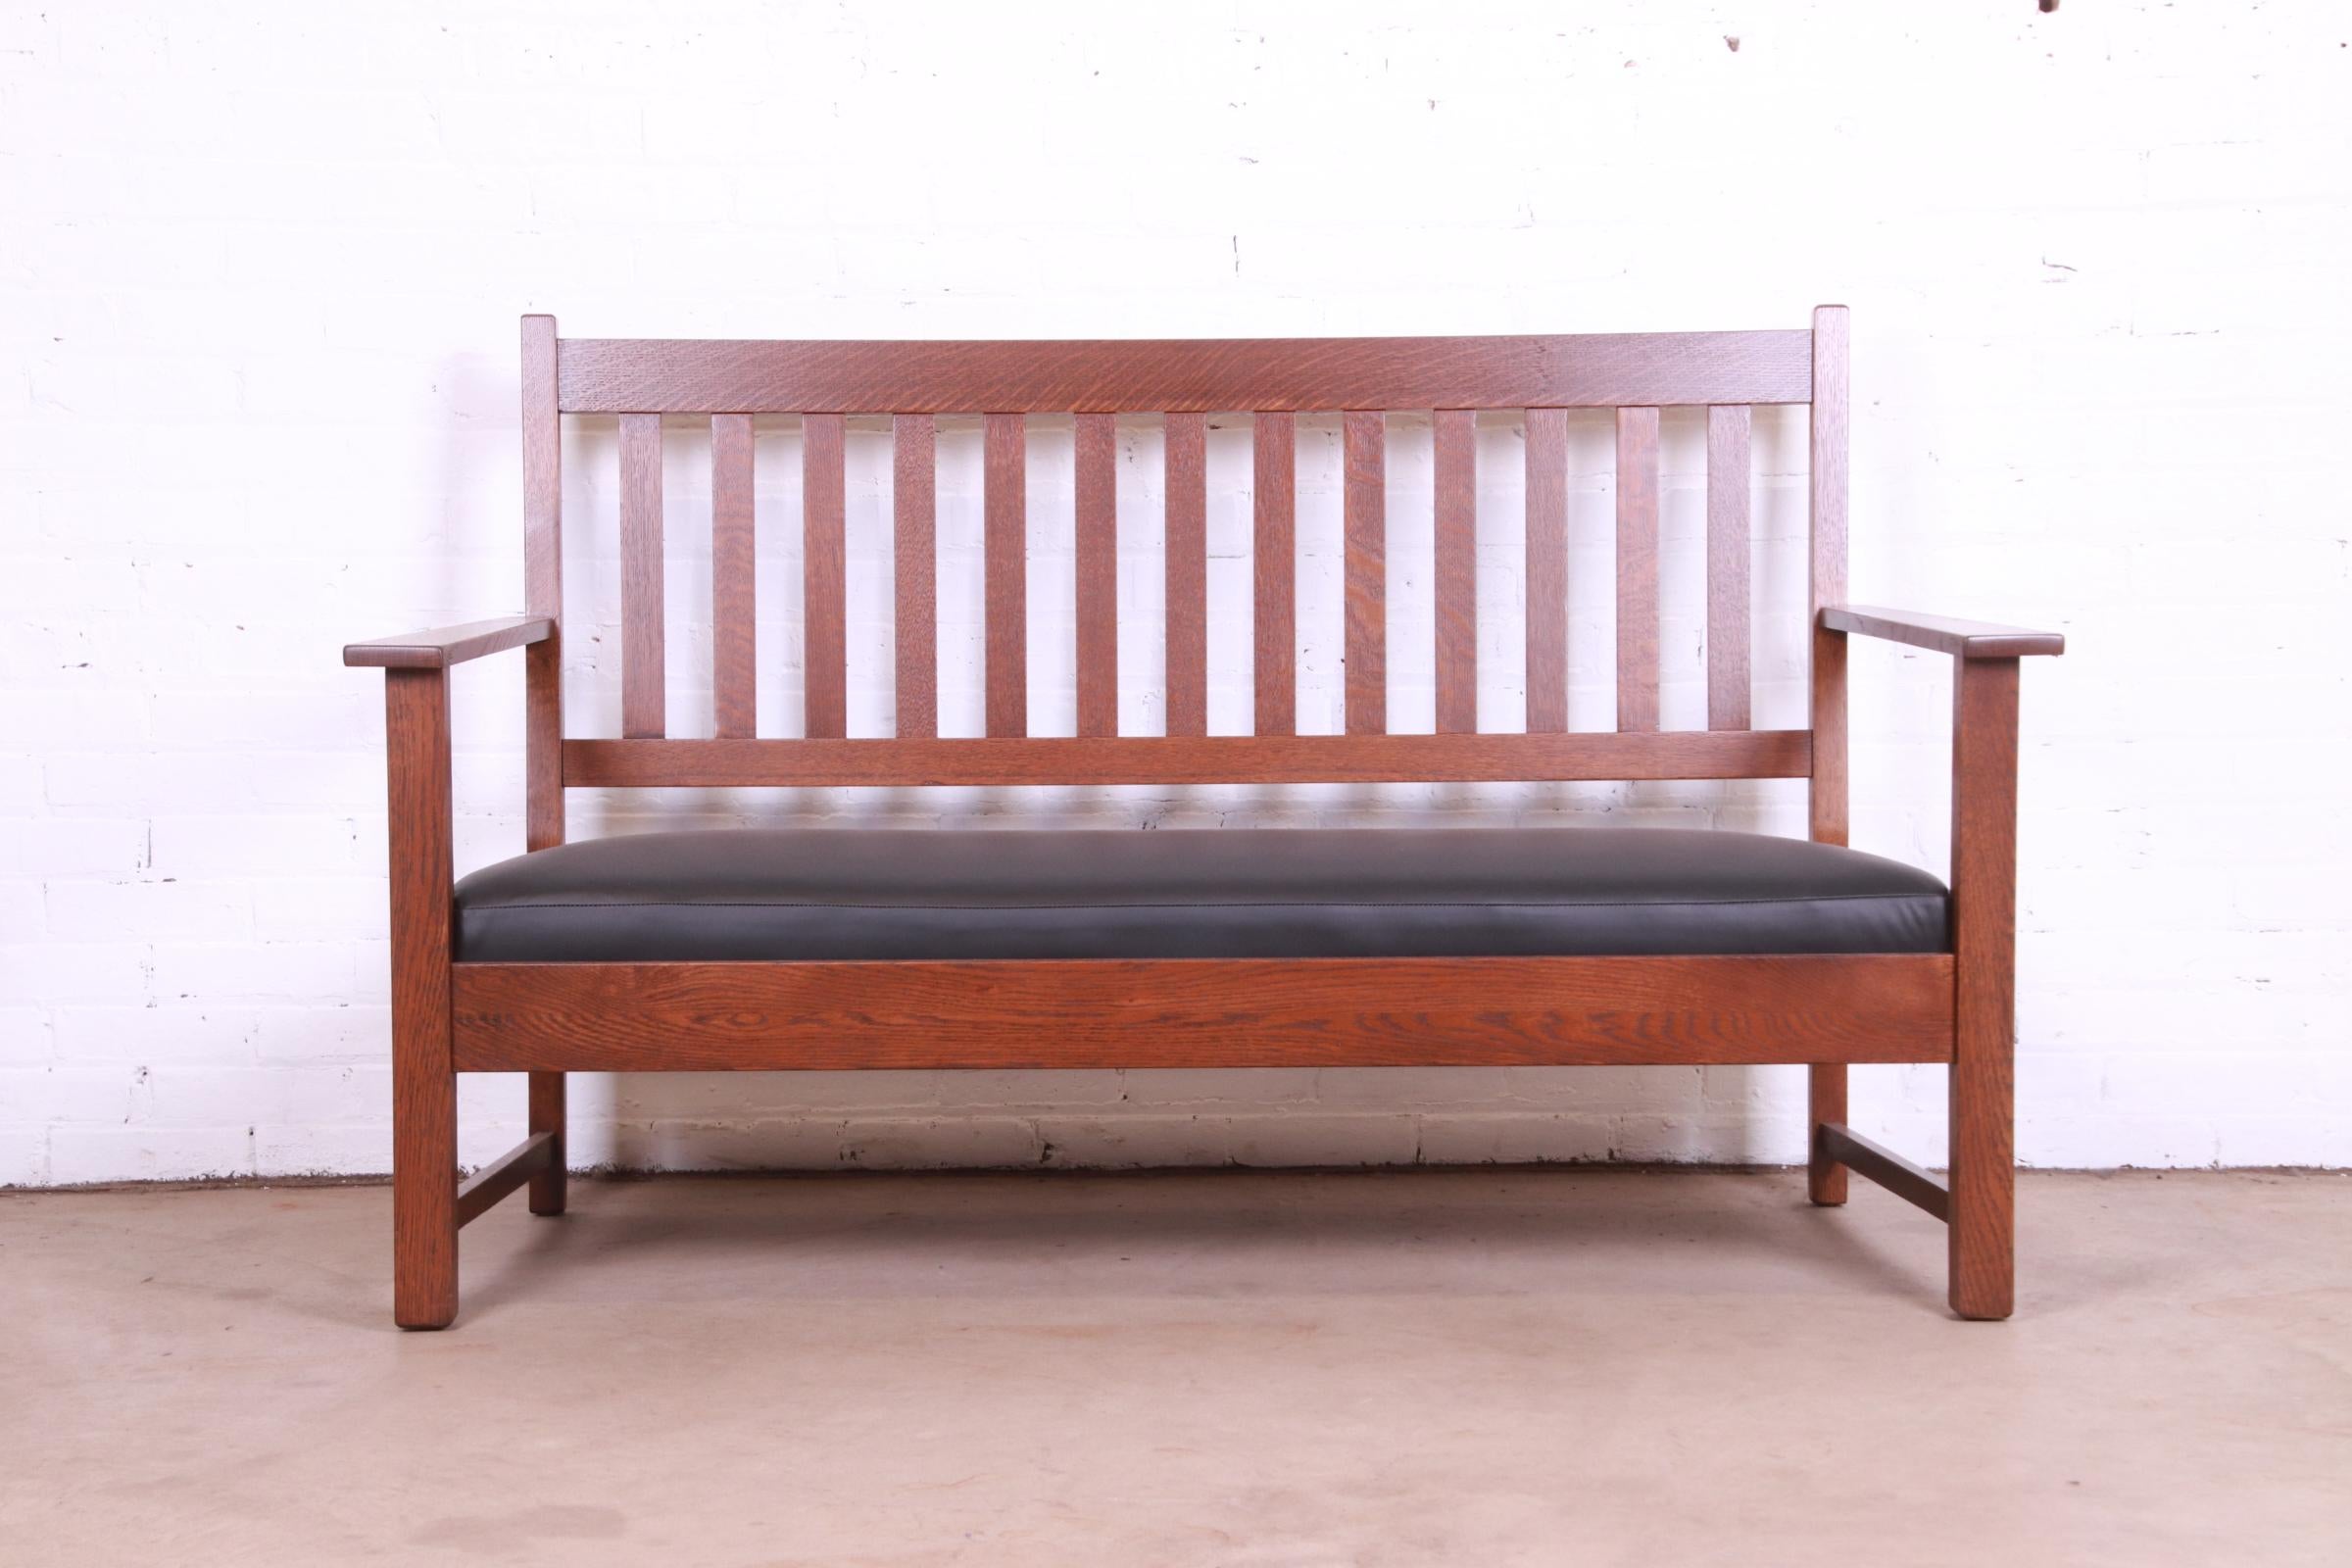 Un exceptionnel canapé, sofa ou banc de style Mission ou Arts & Crafts

Par Charles P. Limbert Co.

USA, Circa 1900

Chêne massif scié sur quartier, avec coussin d'assise en cuir.

Dimensions : 61.75 